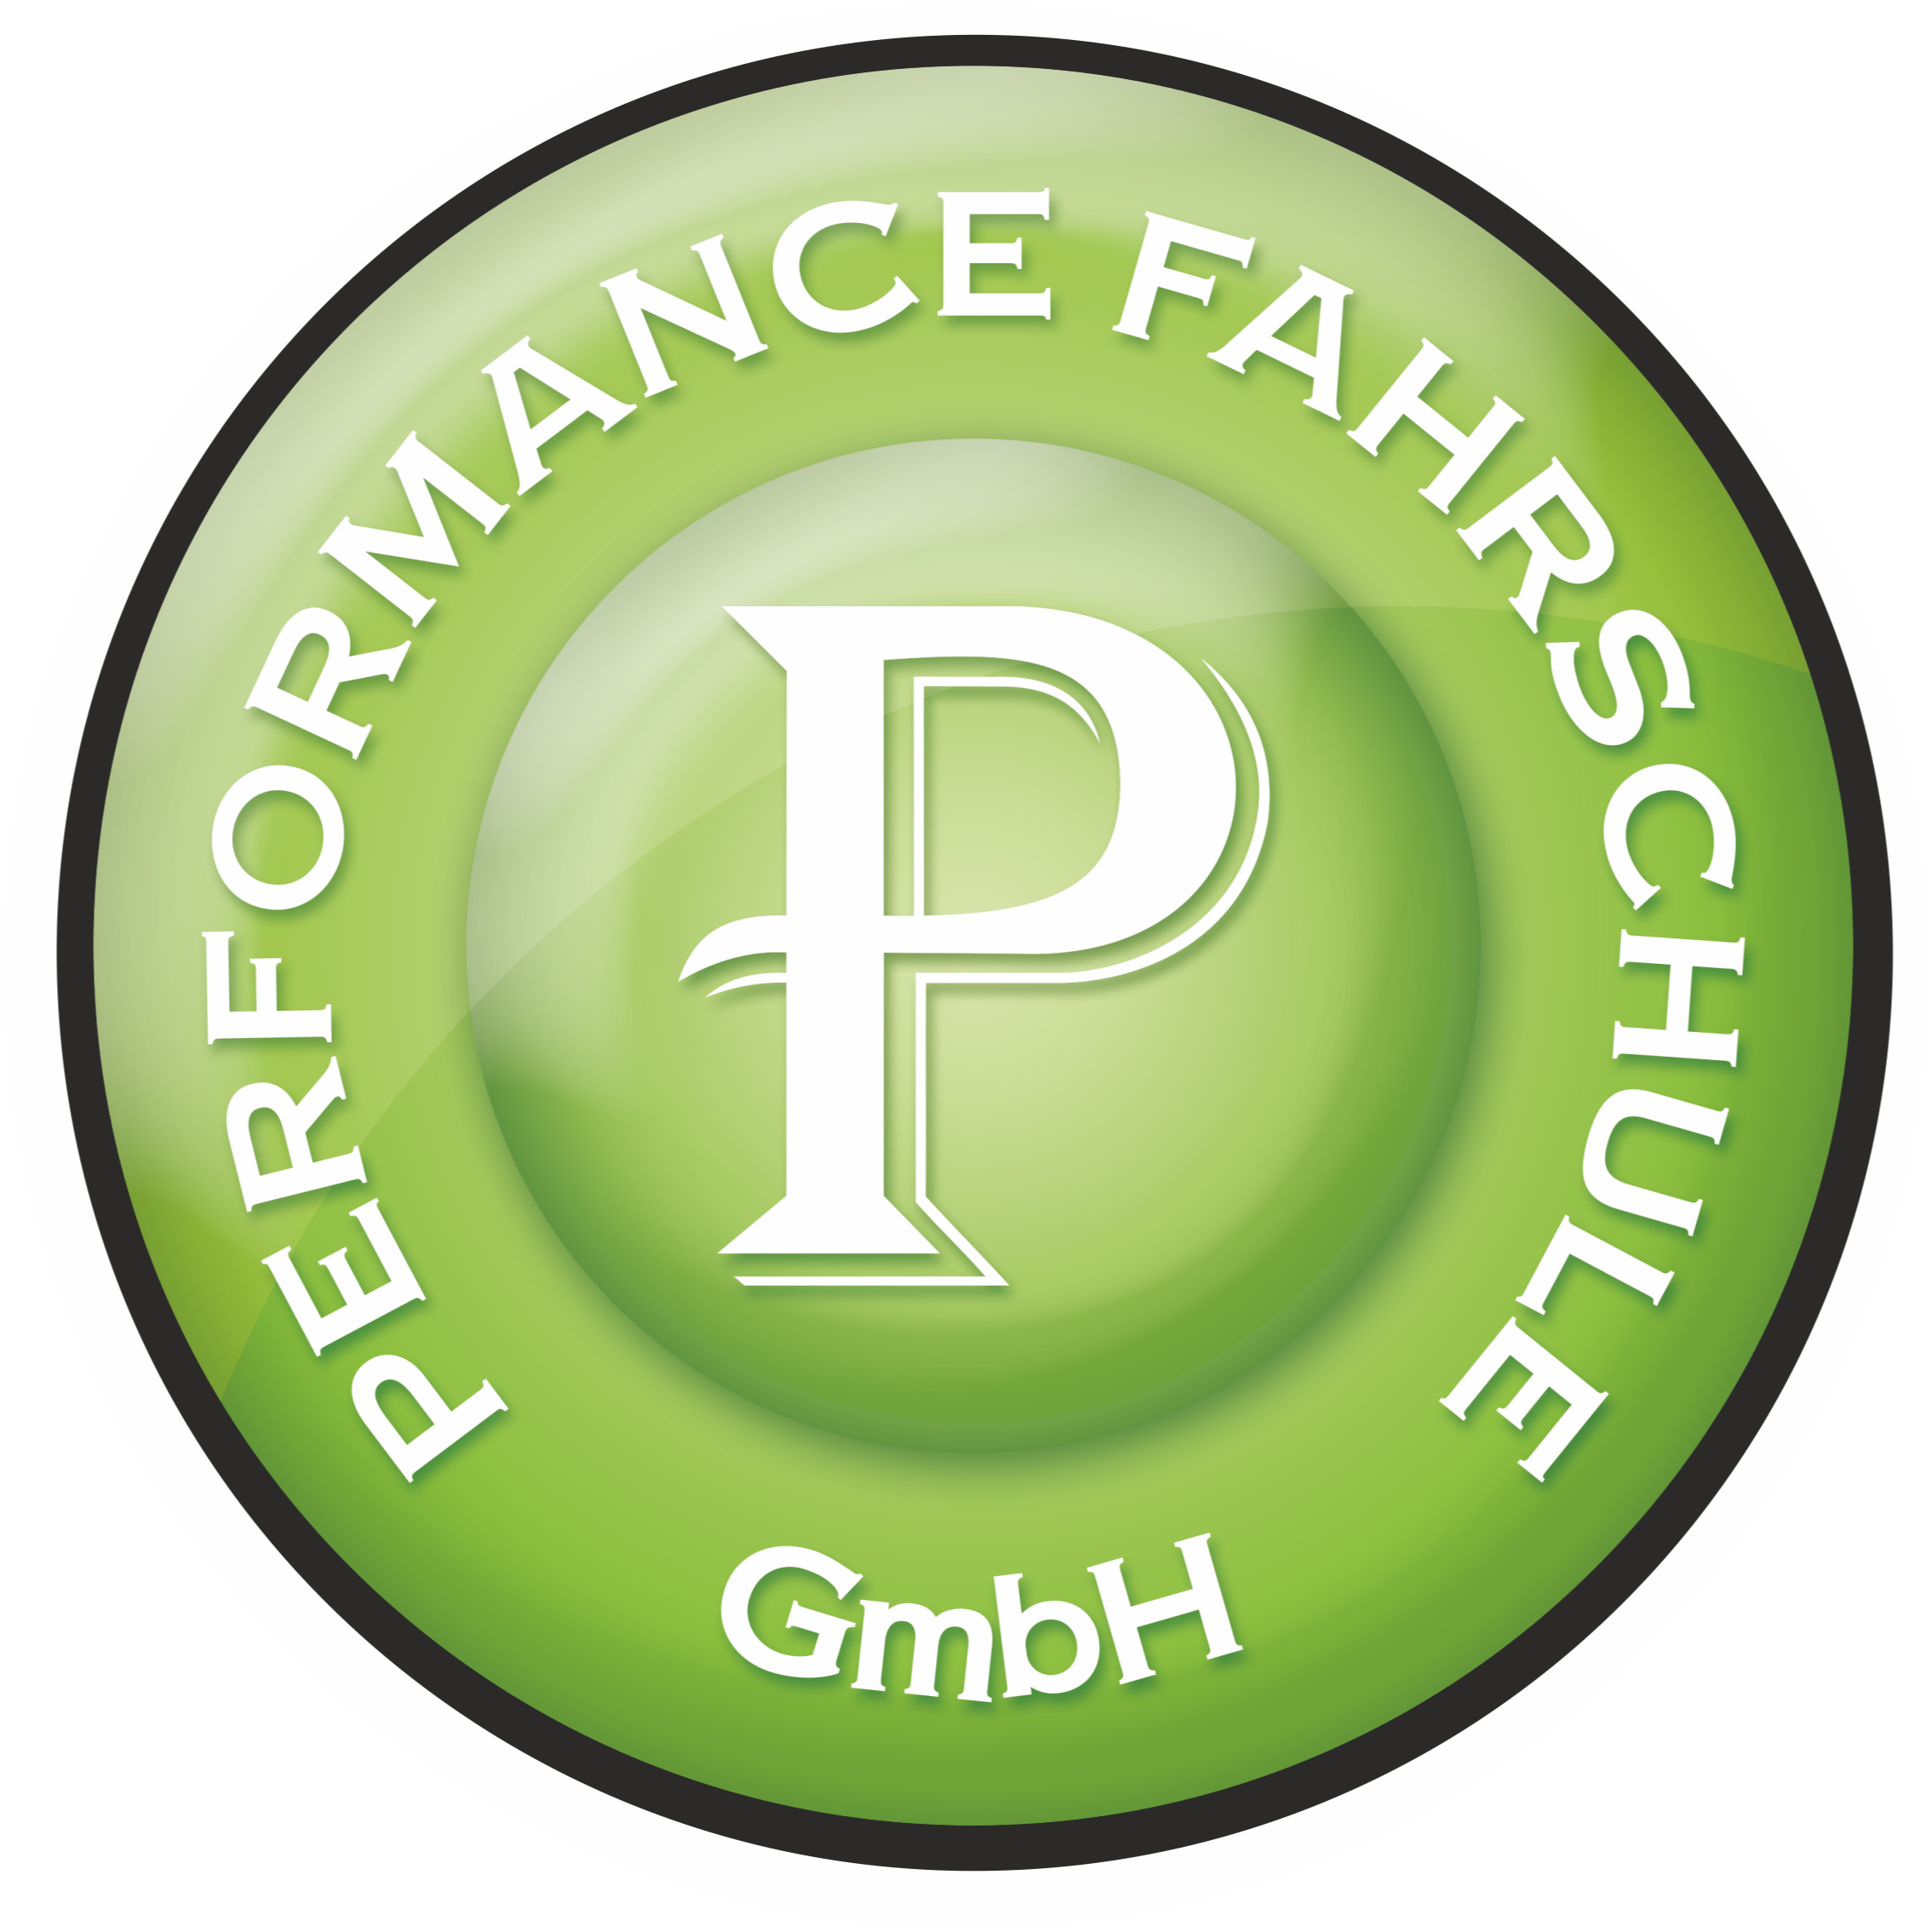 Performance Fahrschule GmbH in Berlin - Logo